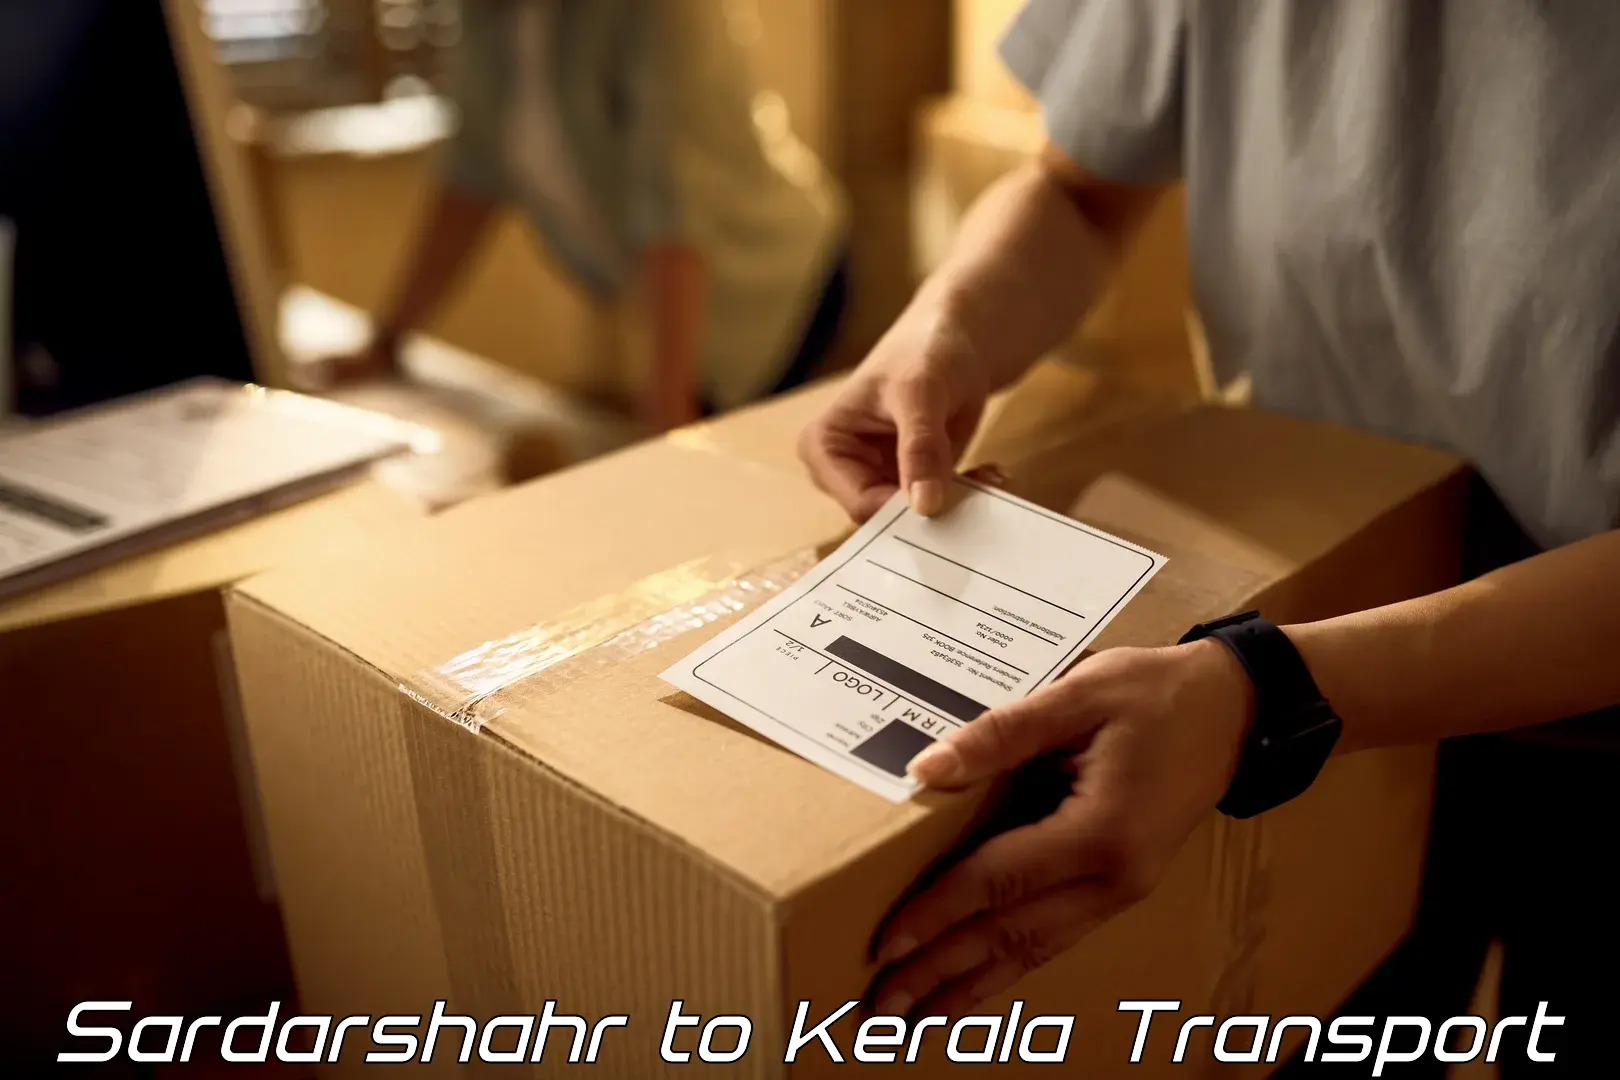 Furniture transport service Sardarshahr to Parakkadavu